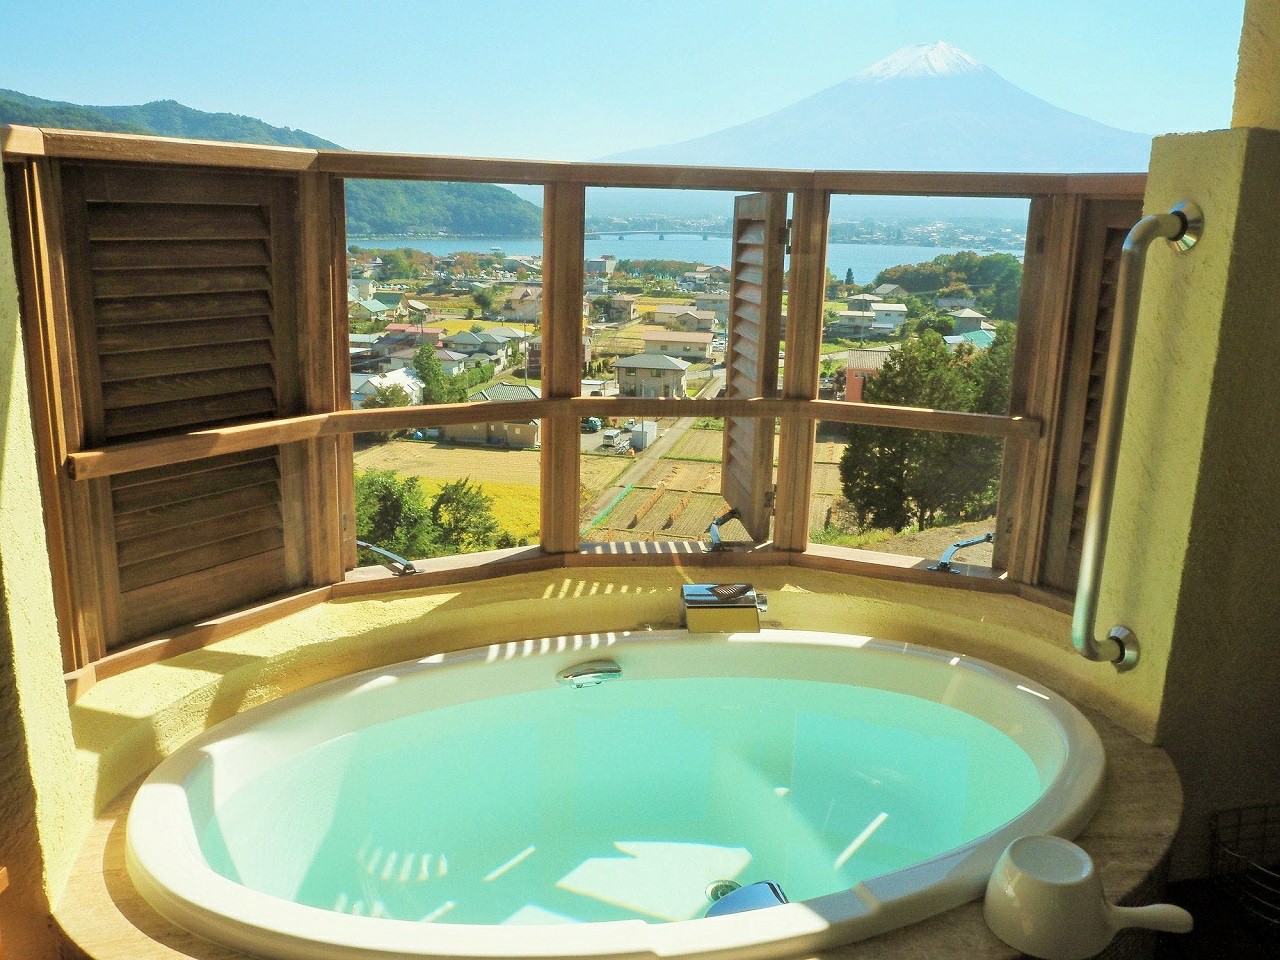 บ่อน้ำร้อน วิวฟูจิ คาวากุจิโกะ โรงแรม ภูเขาไฟฟูจิ